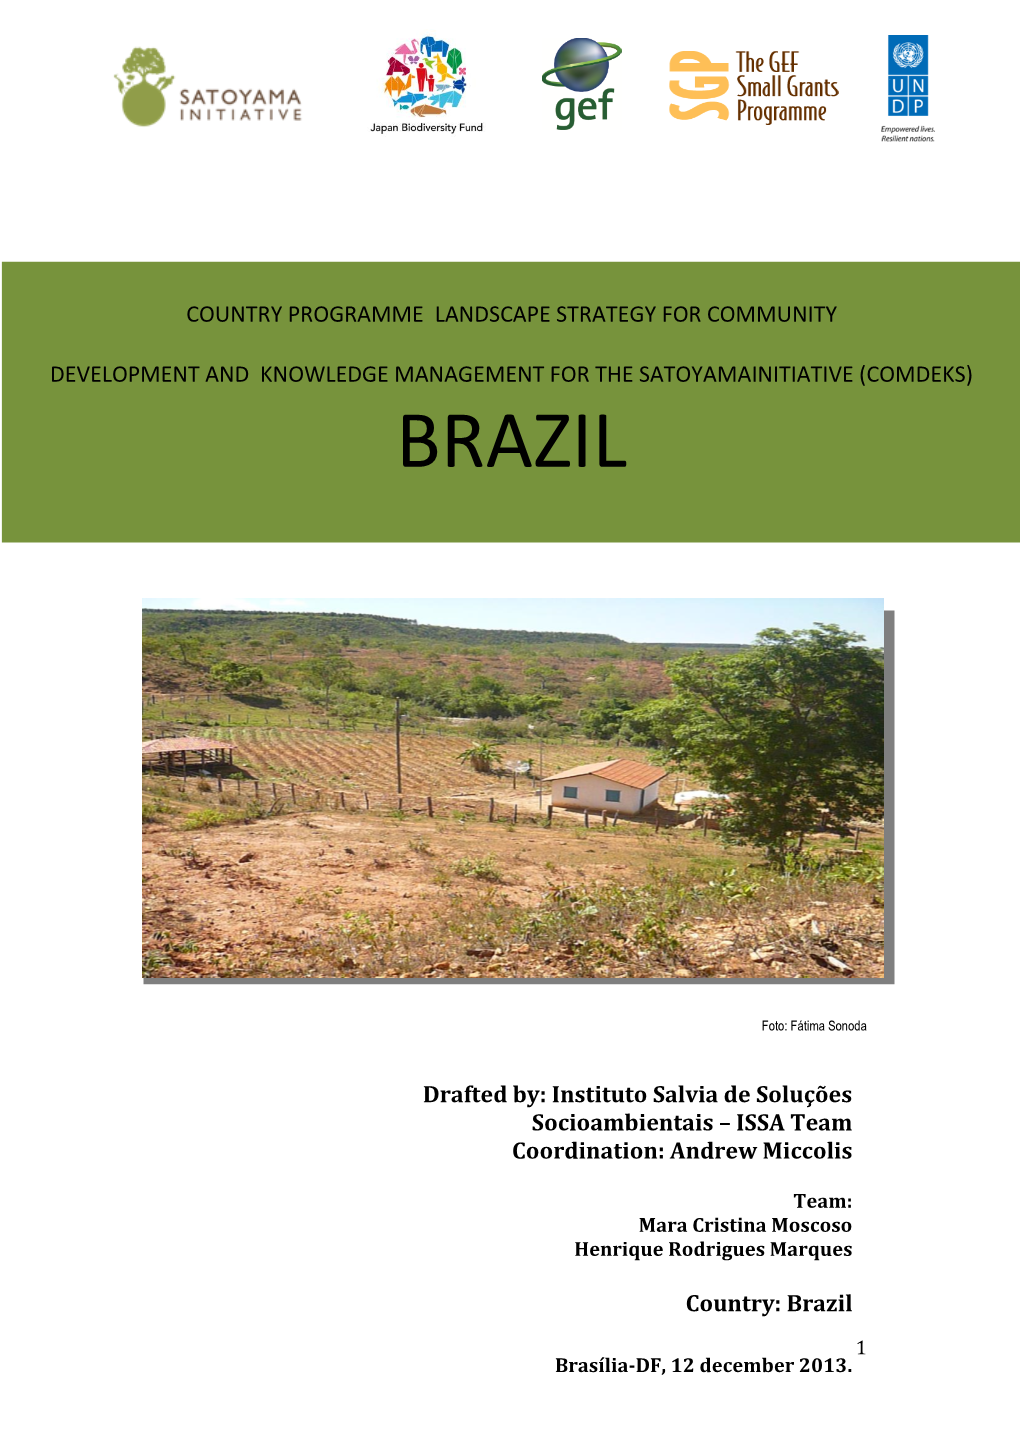 Brazil COMDEKS Country Strategy